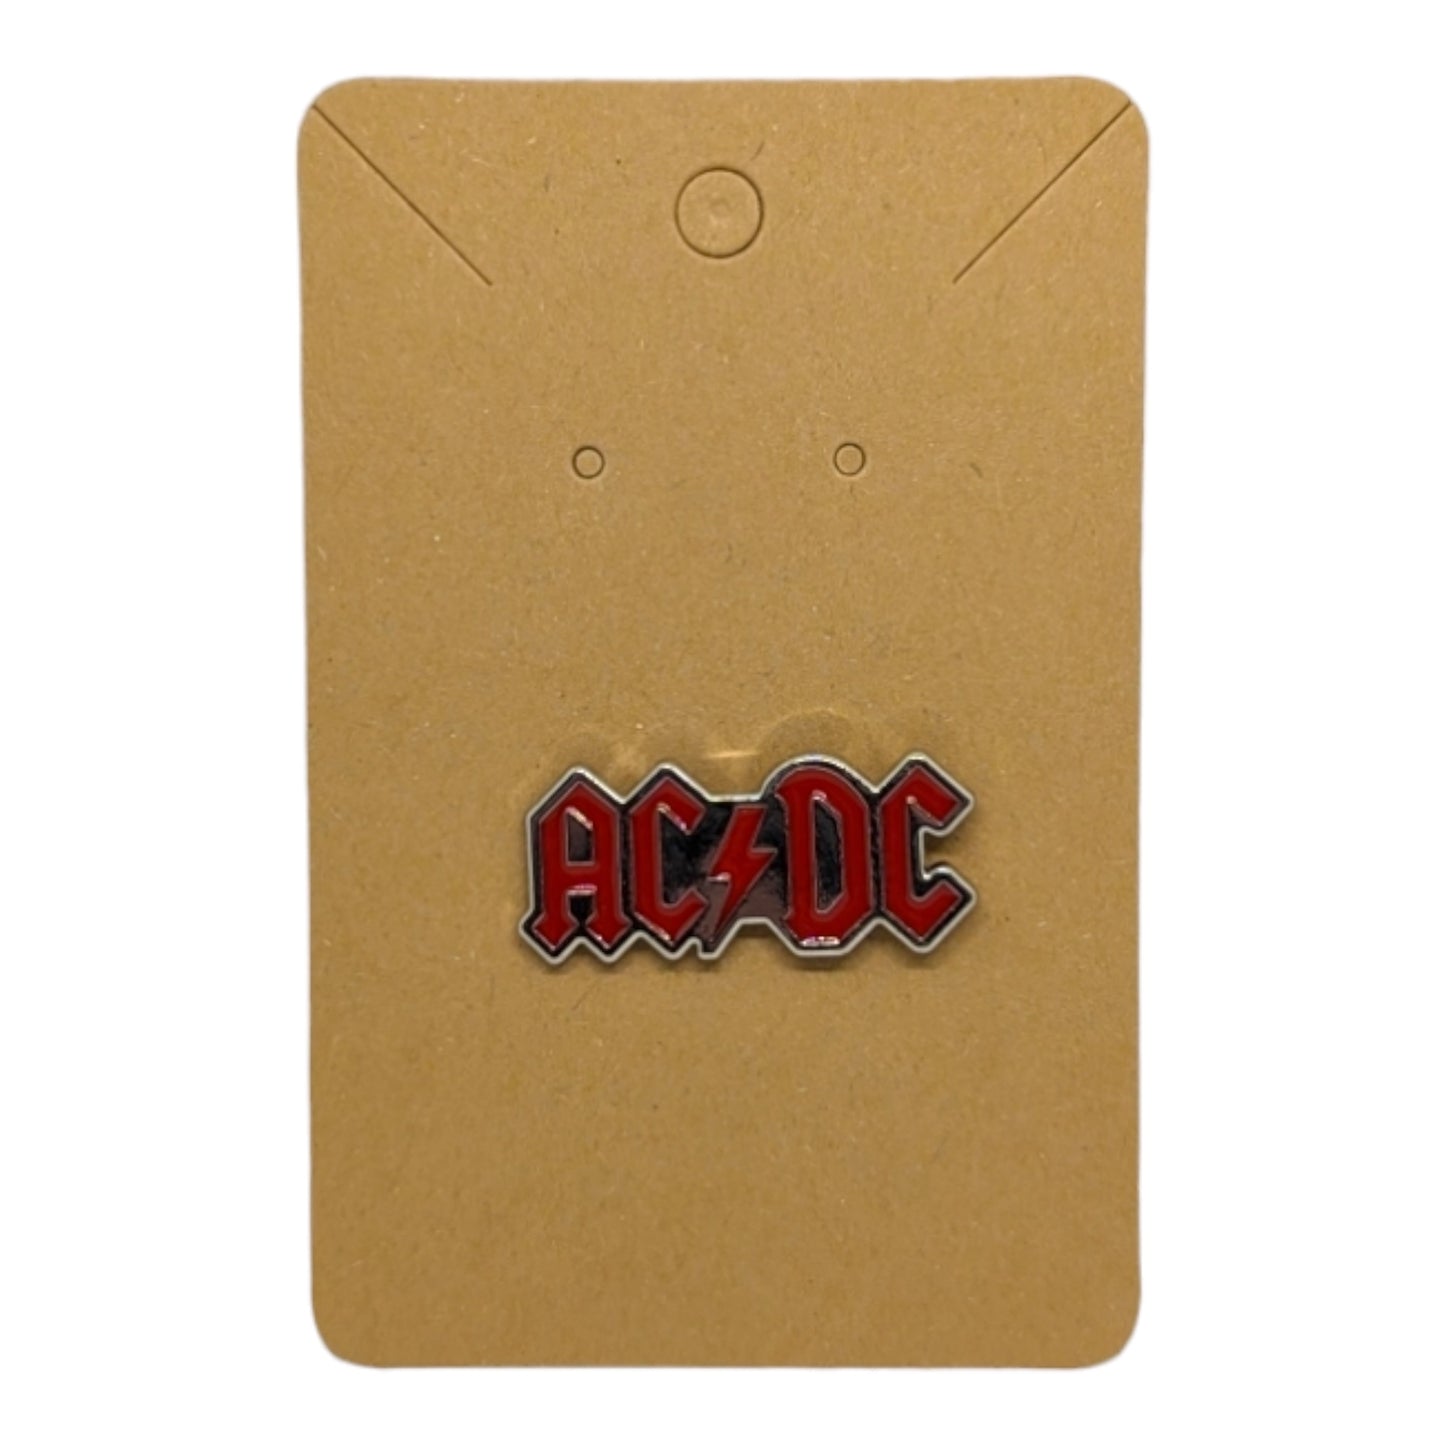 ACDC enamel pin #140